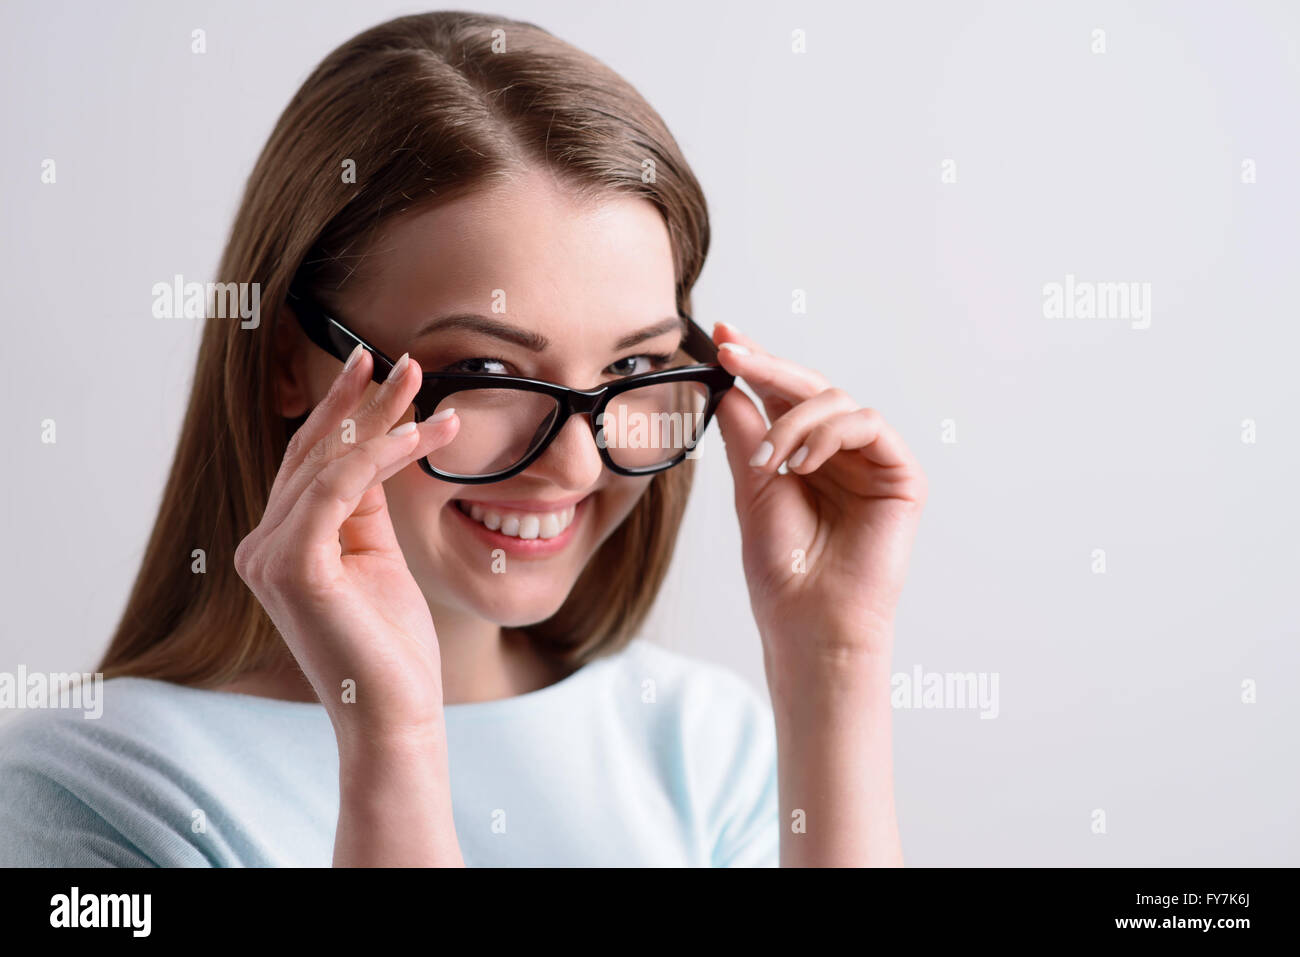 Positive girl holding her glasses Stock Photo